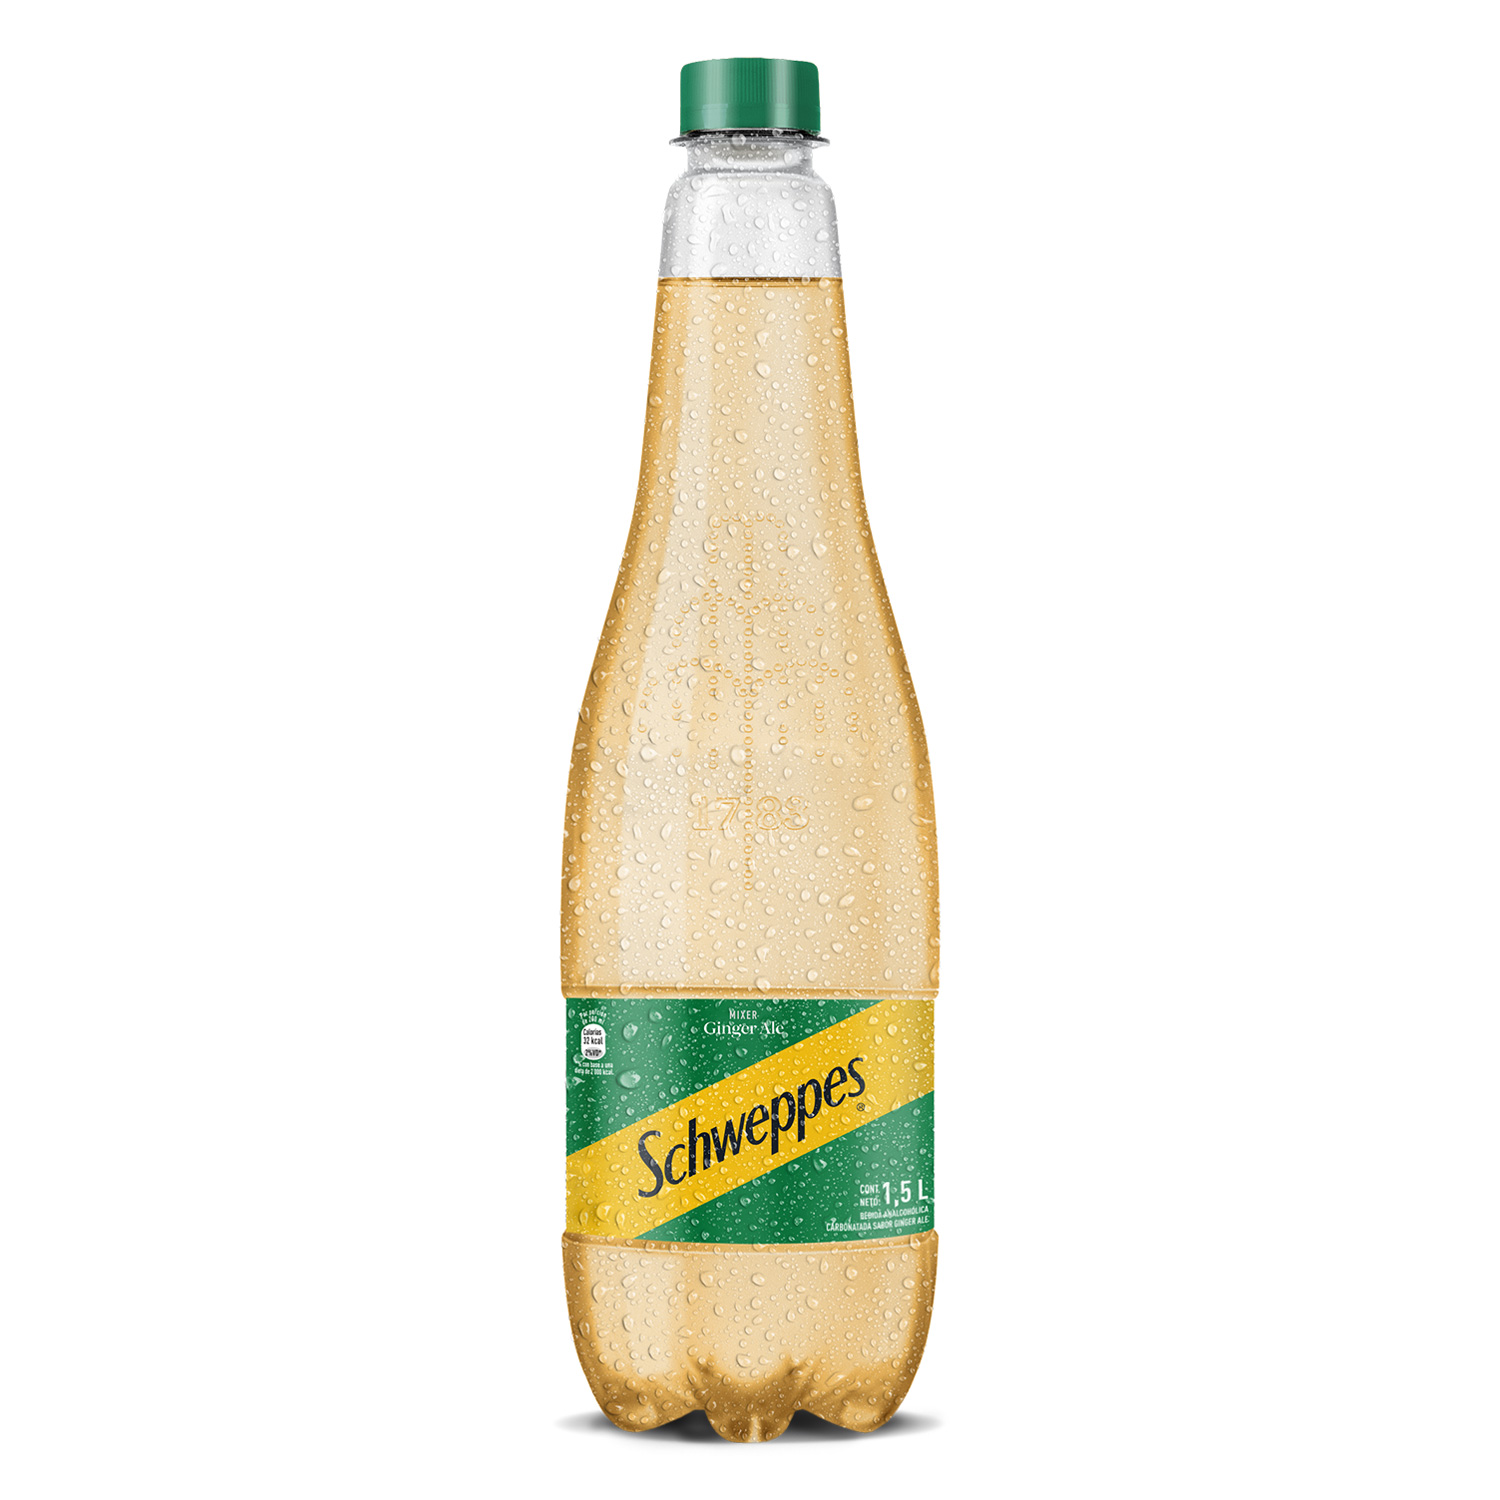 Botella de Schweppes Ginger Ale 1,5L